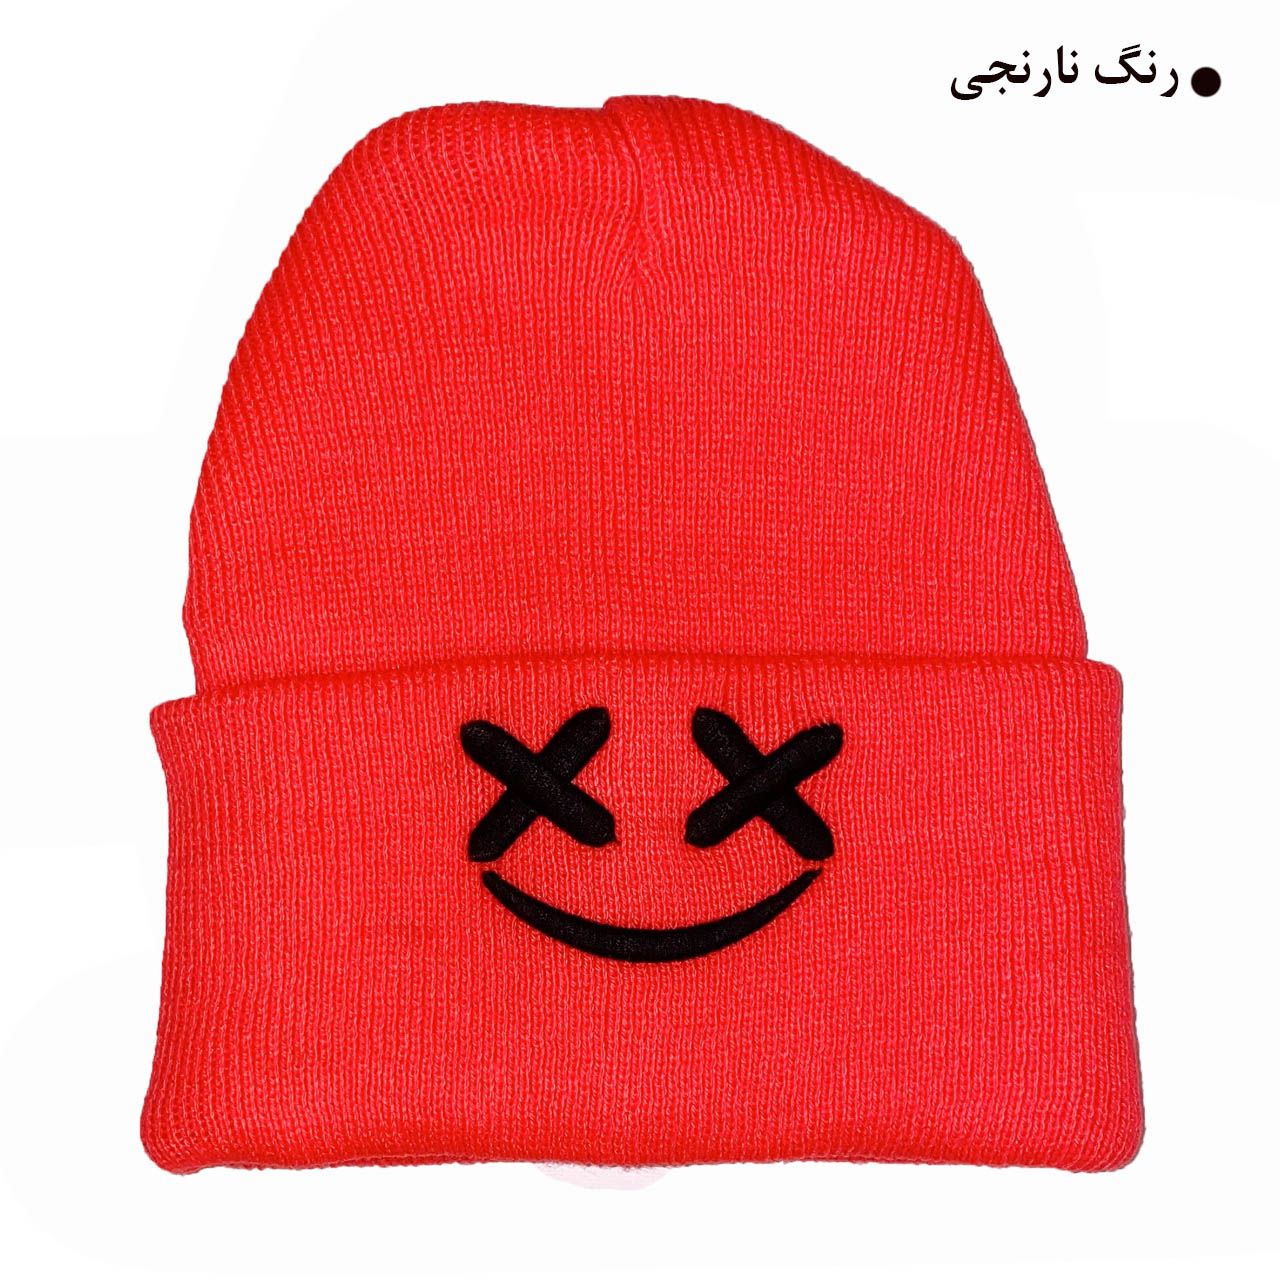 کلاه بافتنی مدل زمستانی طرح لبخند کد 121 -  - 13